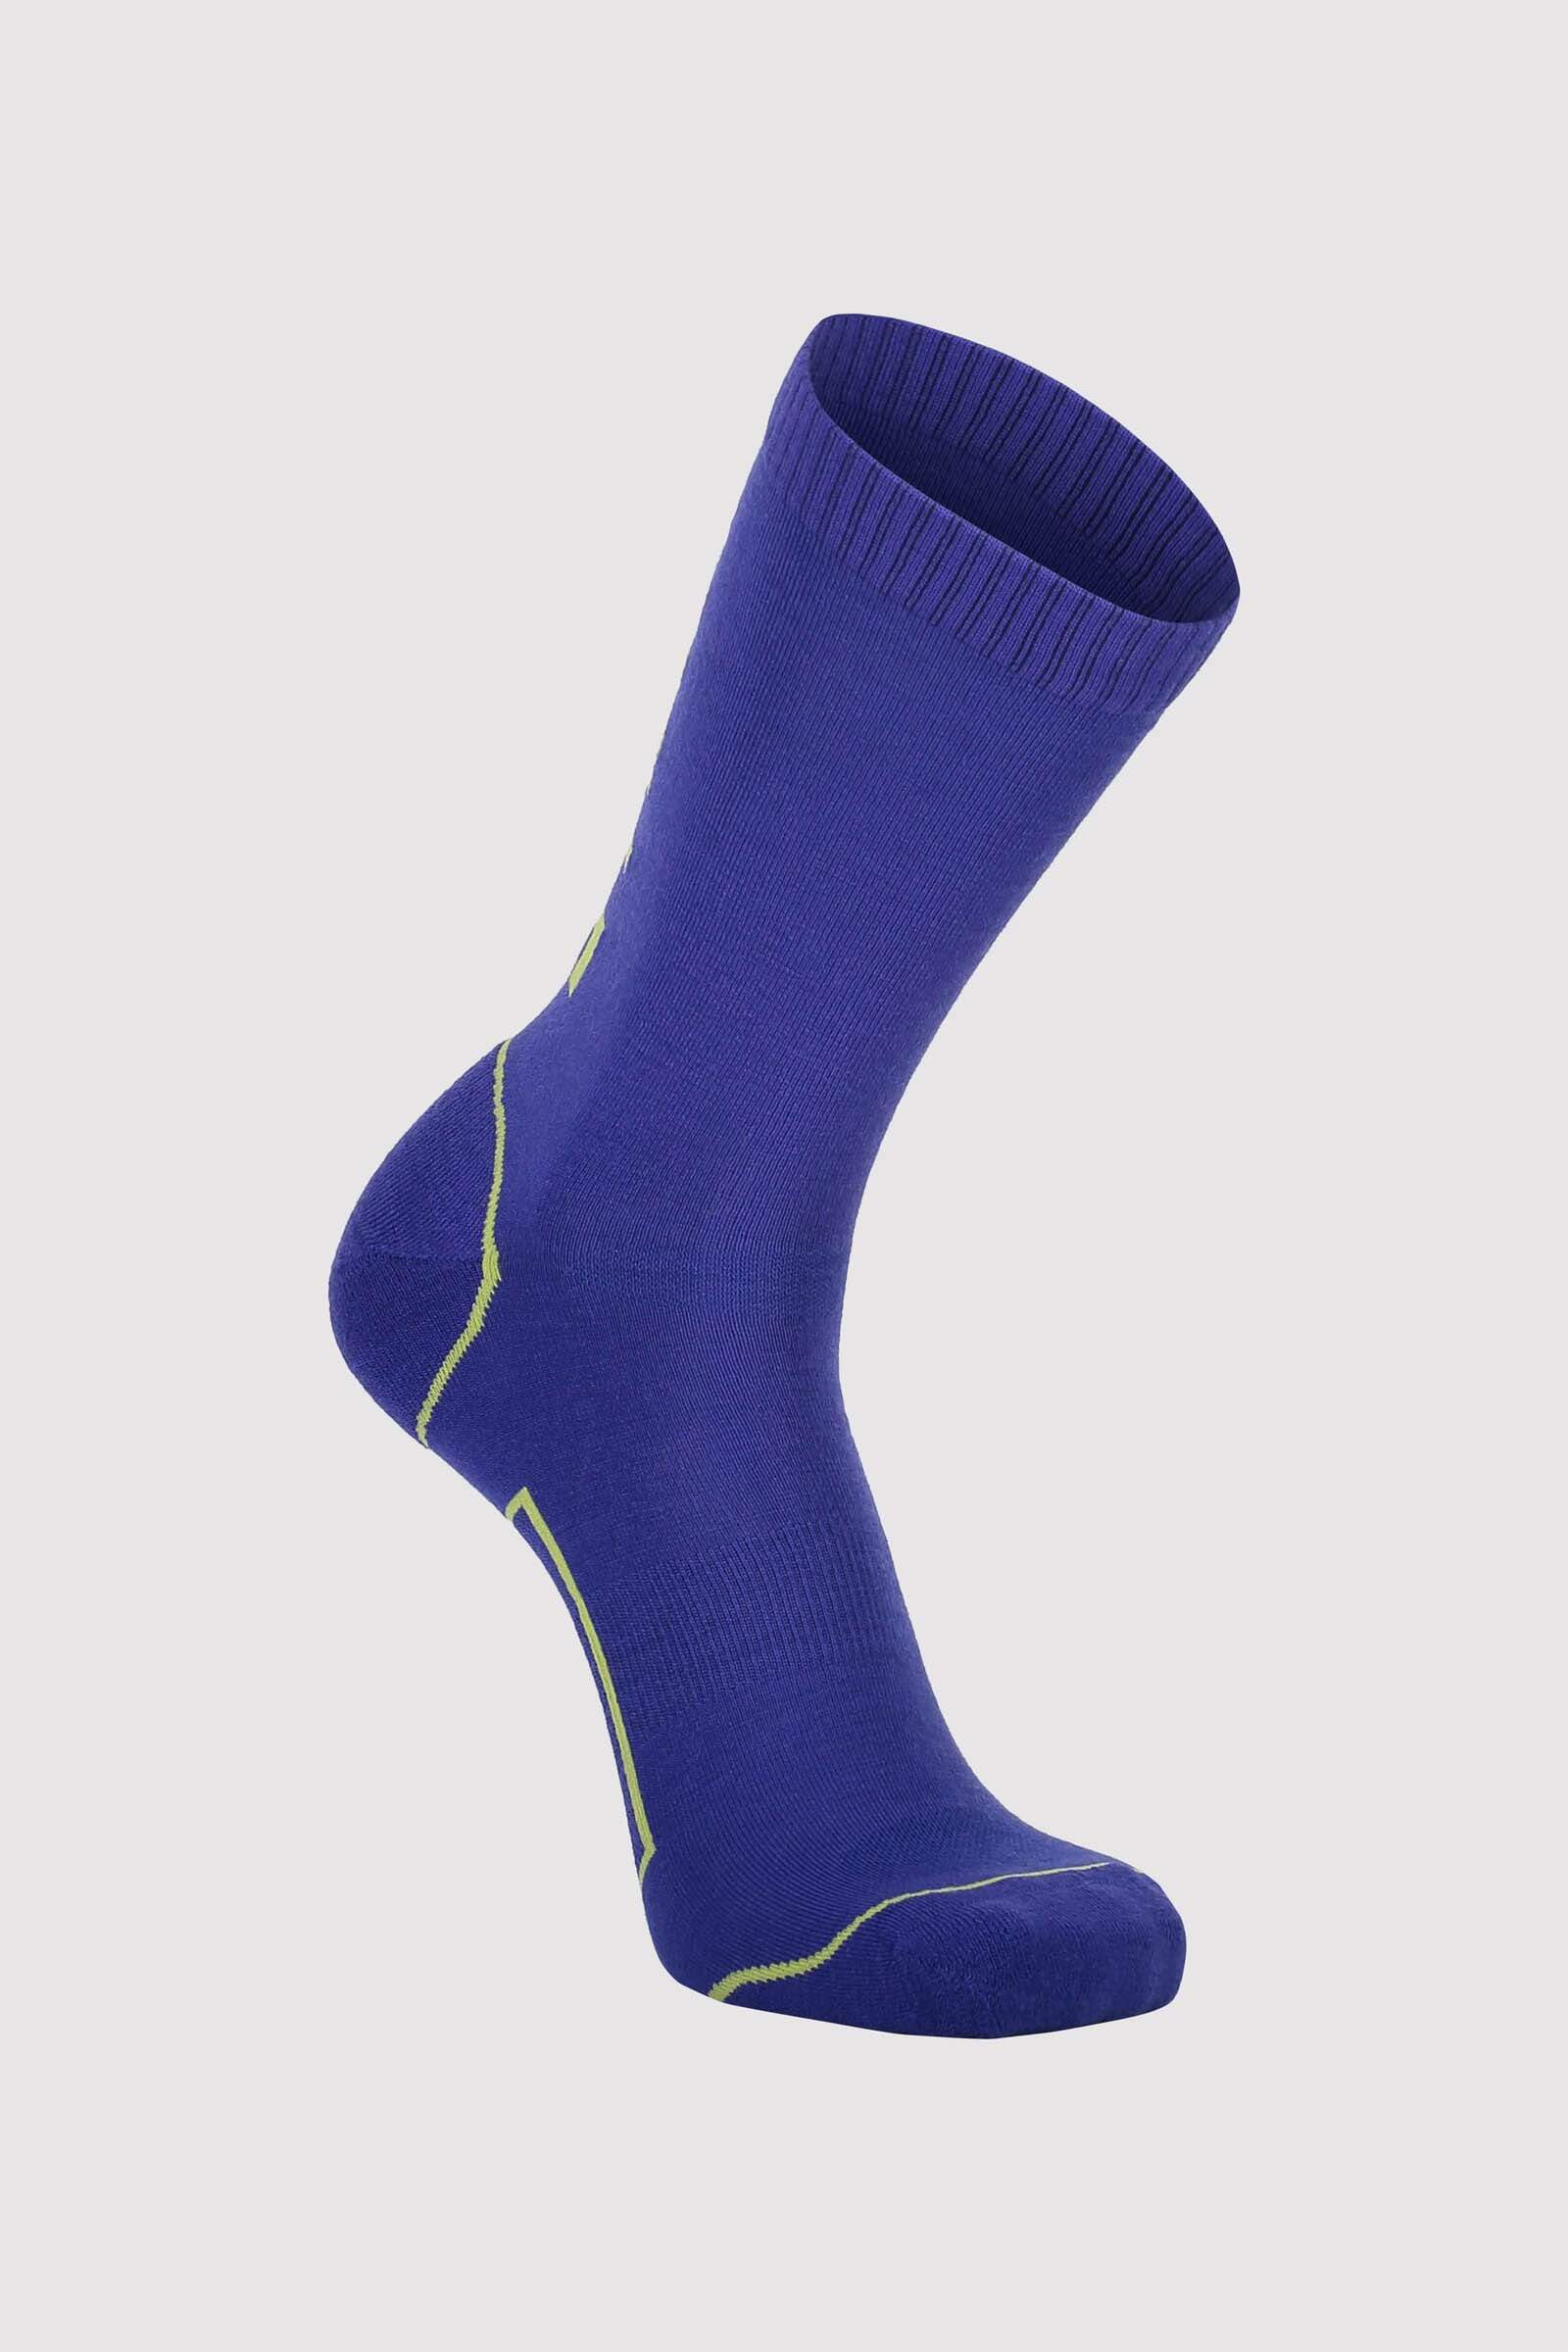 Mons Royale Unisex Tech Bike Sock 2.0 - Merino Wool, Ultra Blue / 39-41